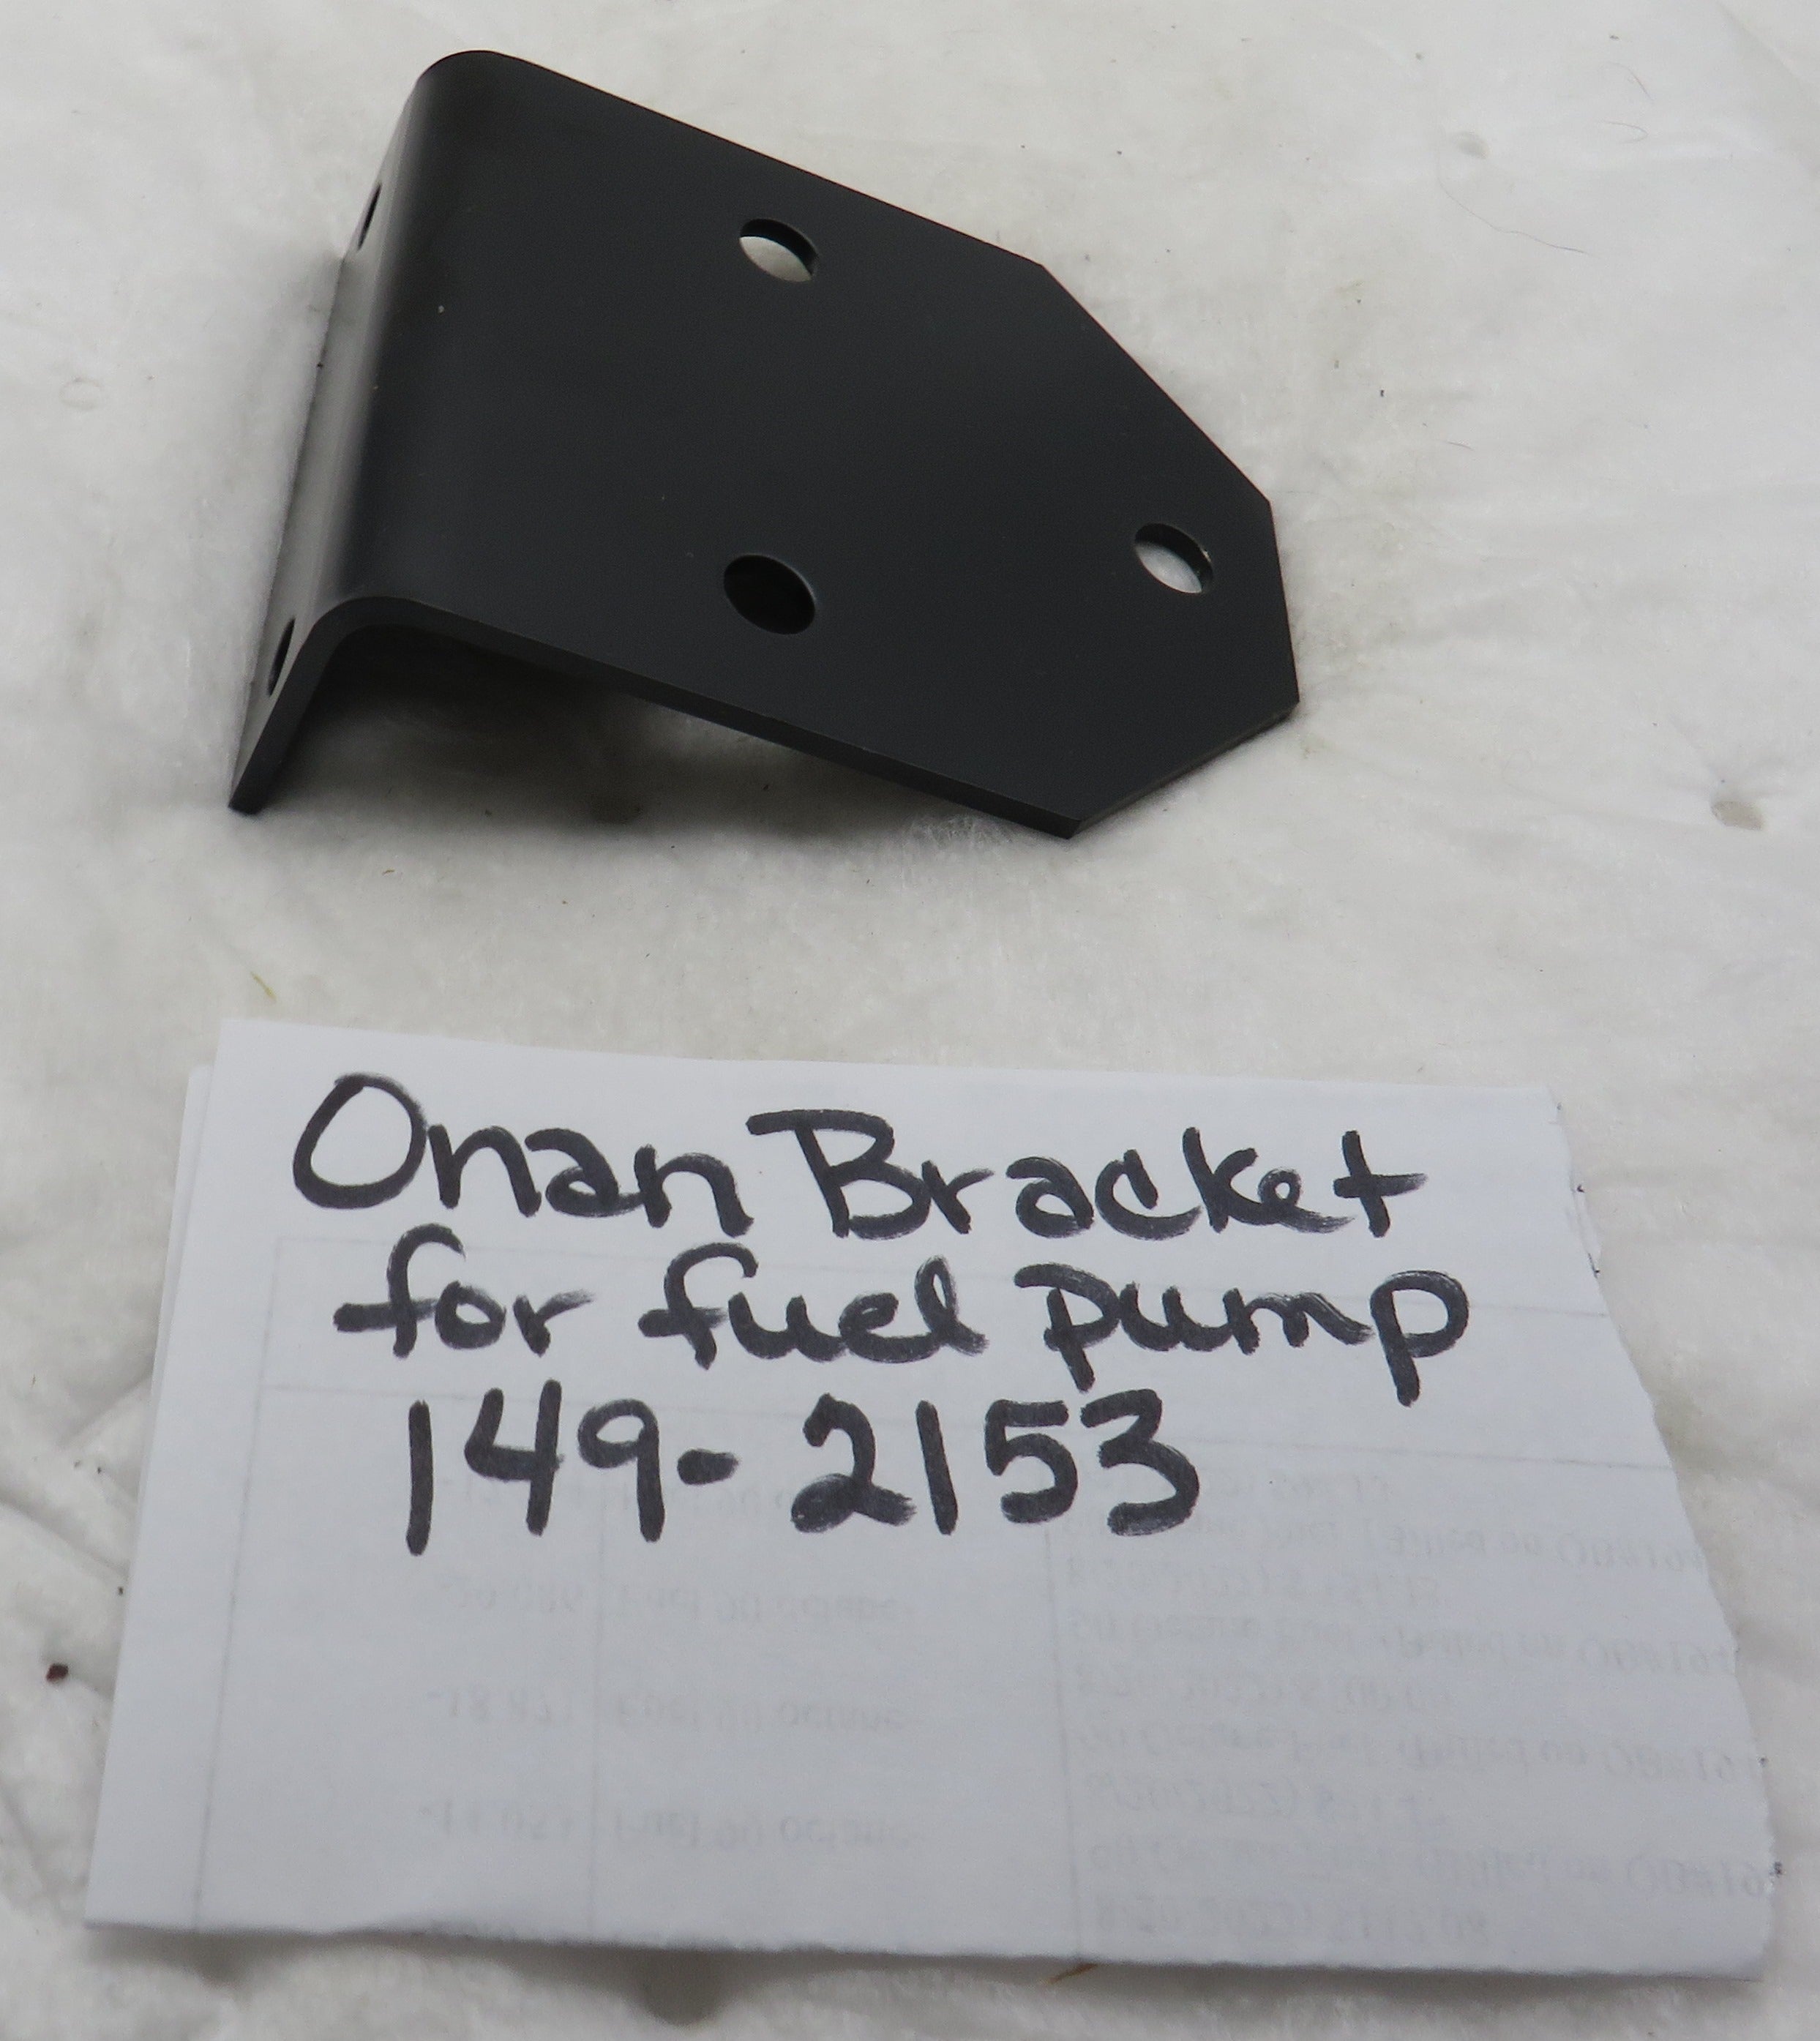 149-2153 Onan Bracket OBSOLETE for Fuel Pump 149-2159 